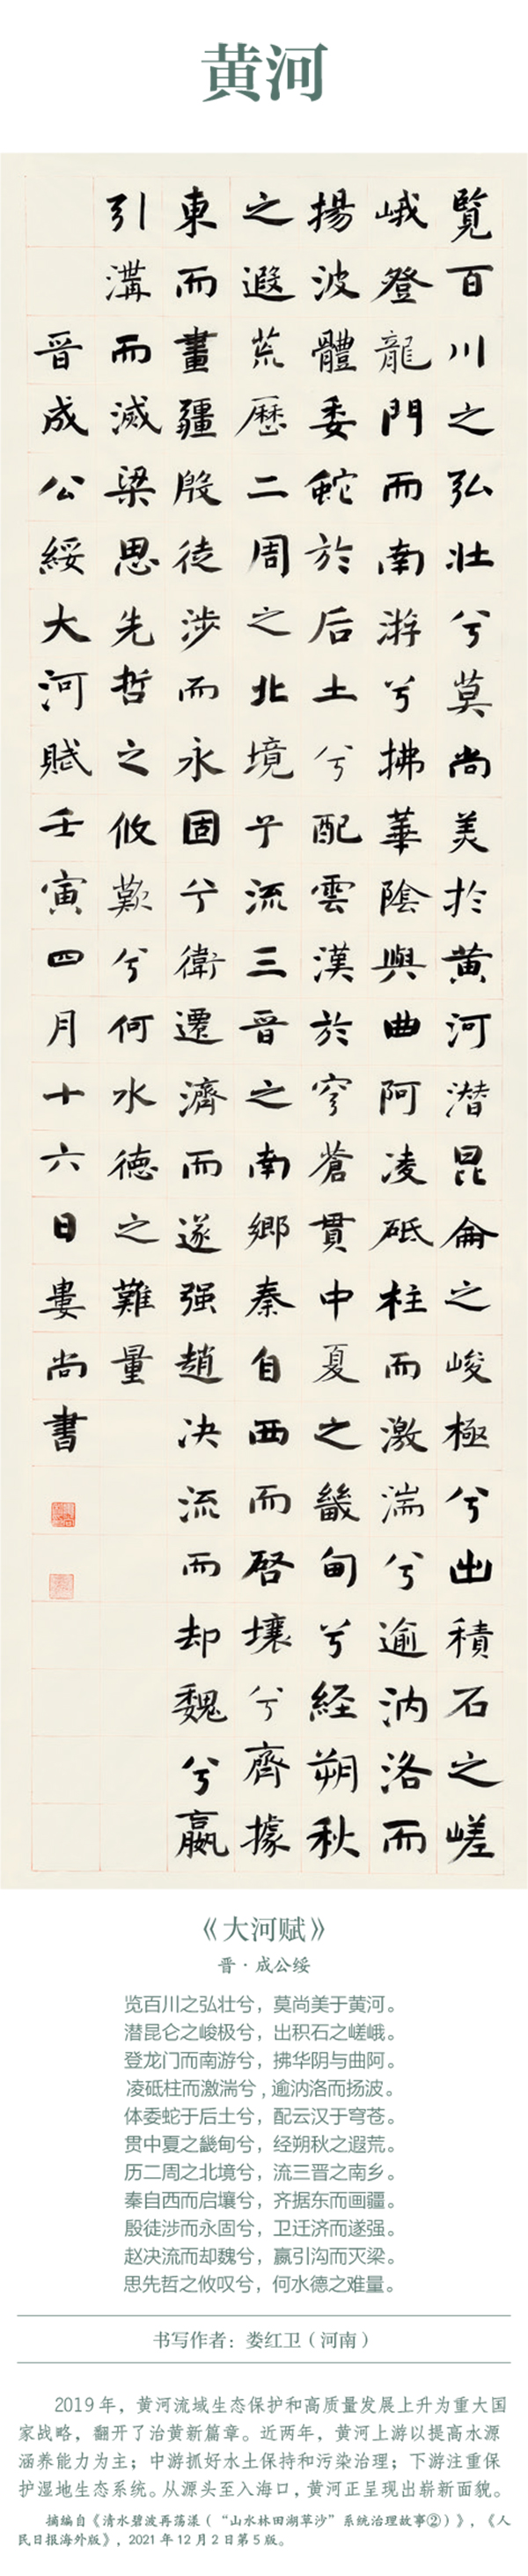 中国书协主题创作书法系列展——美丽中国插图8题字网